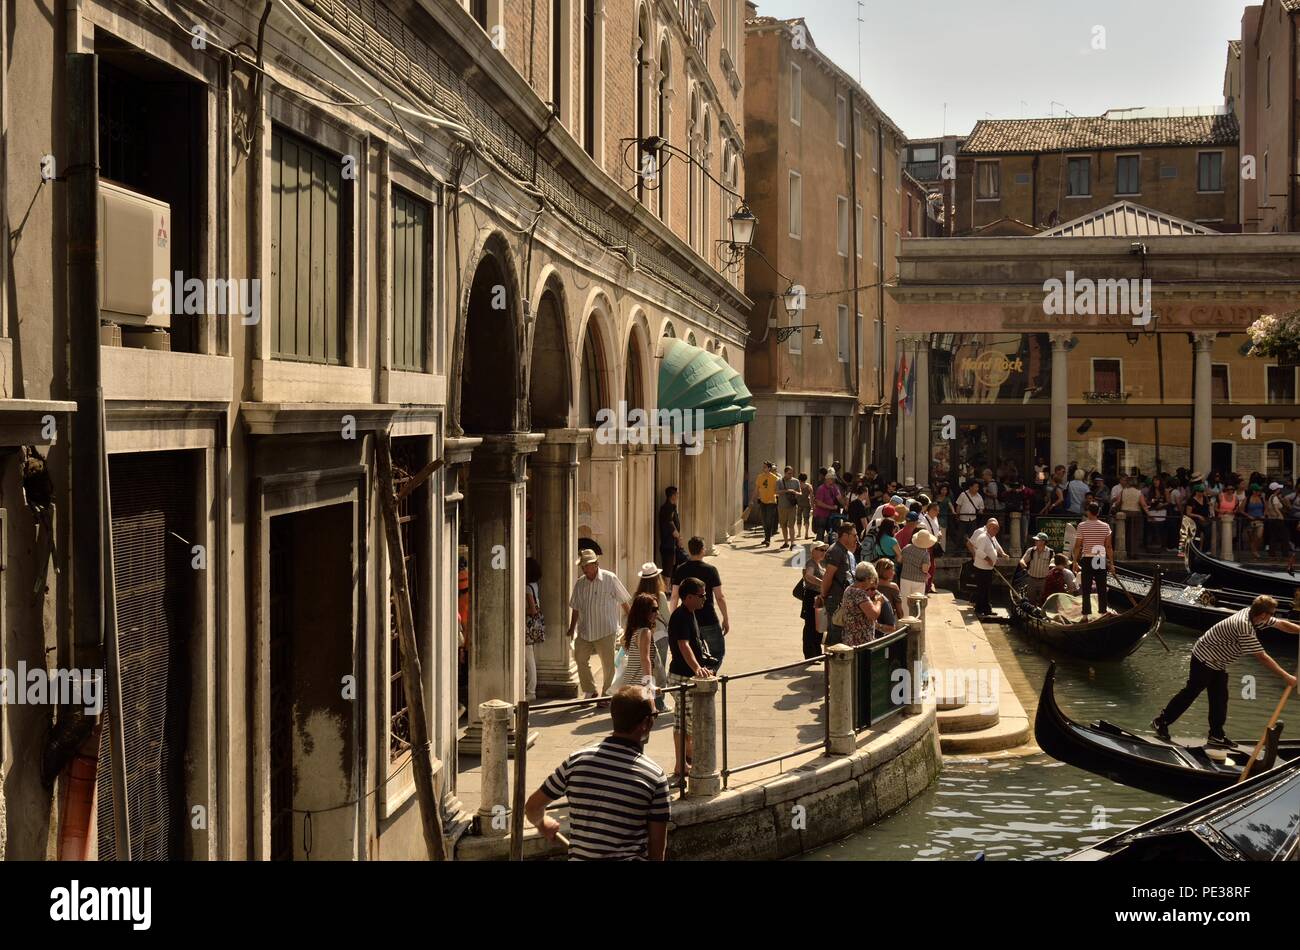 Une scène typique au point de départ de Gondola Ride près du Hard Rock Cafe et de l'hôtel Cavalletto, San Marco, Venise, Italie Banque D'Images